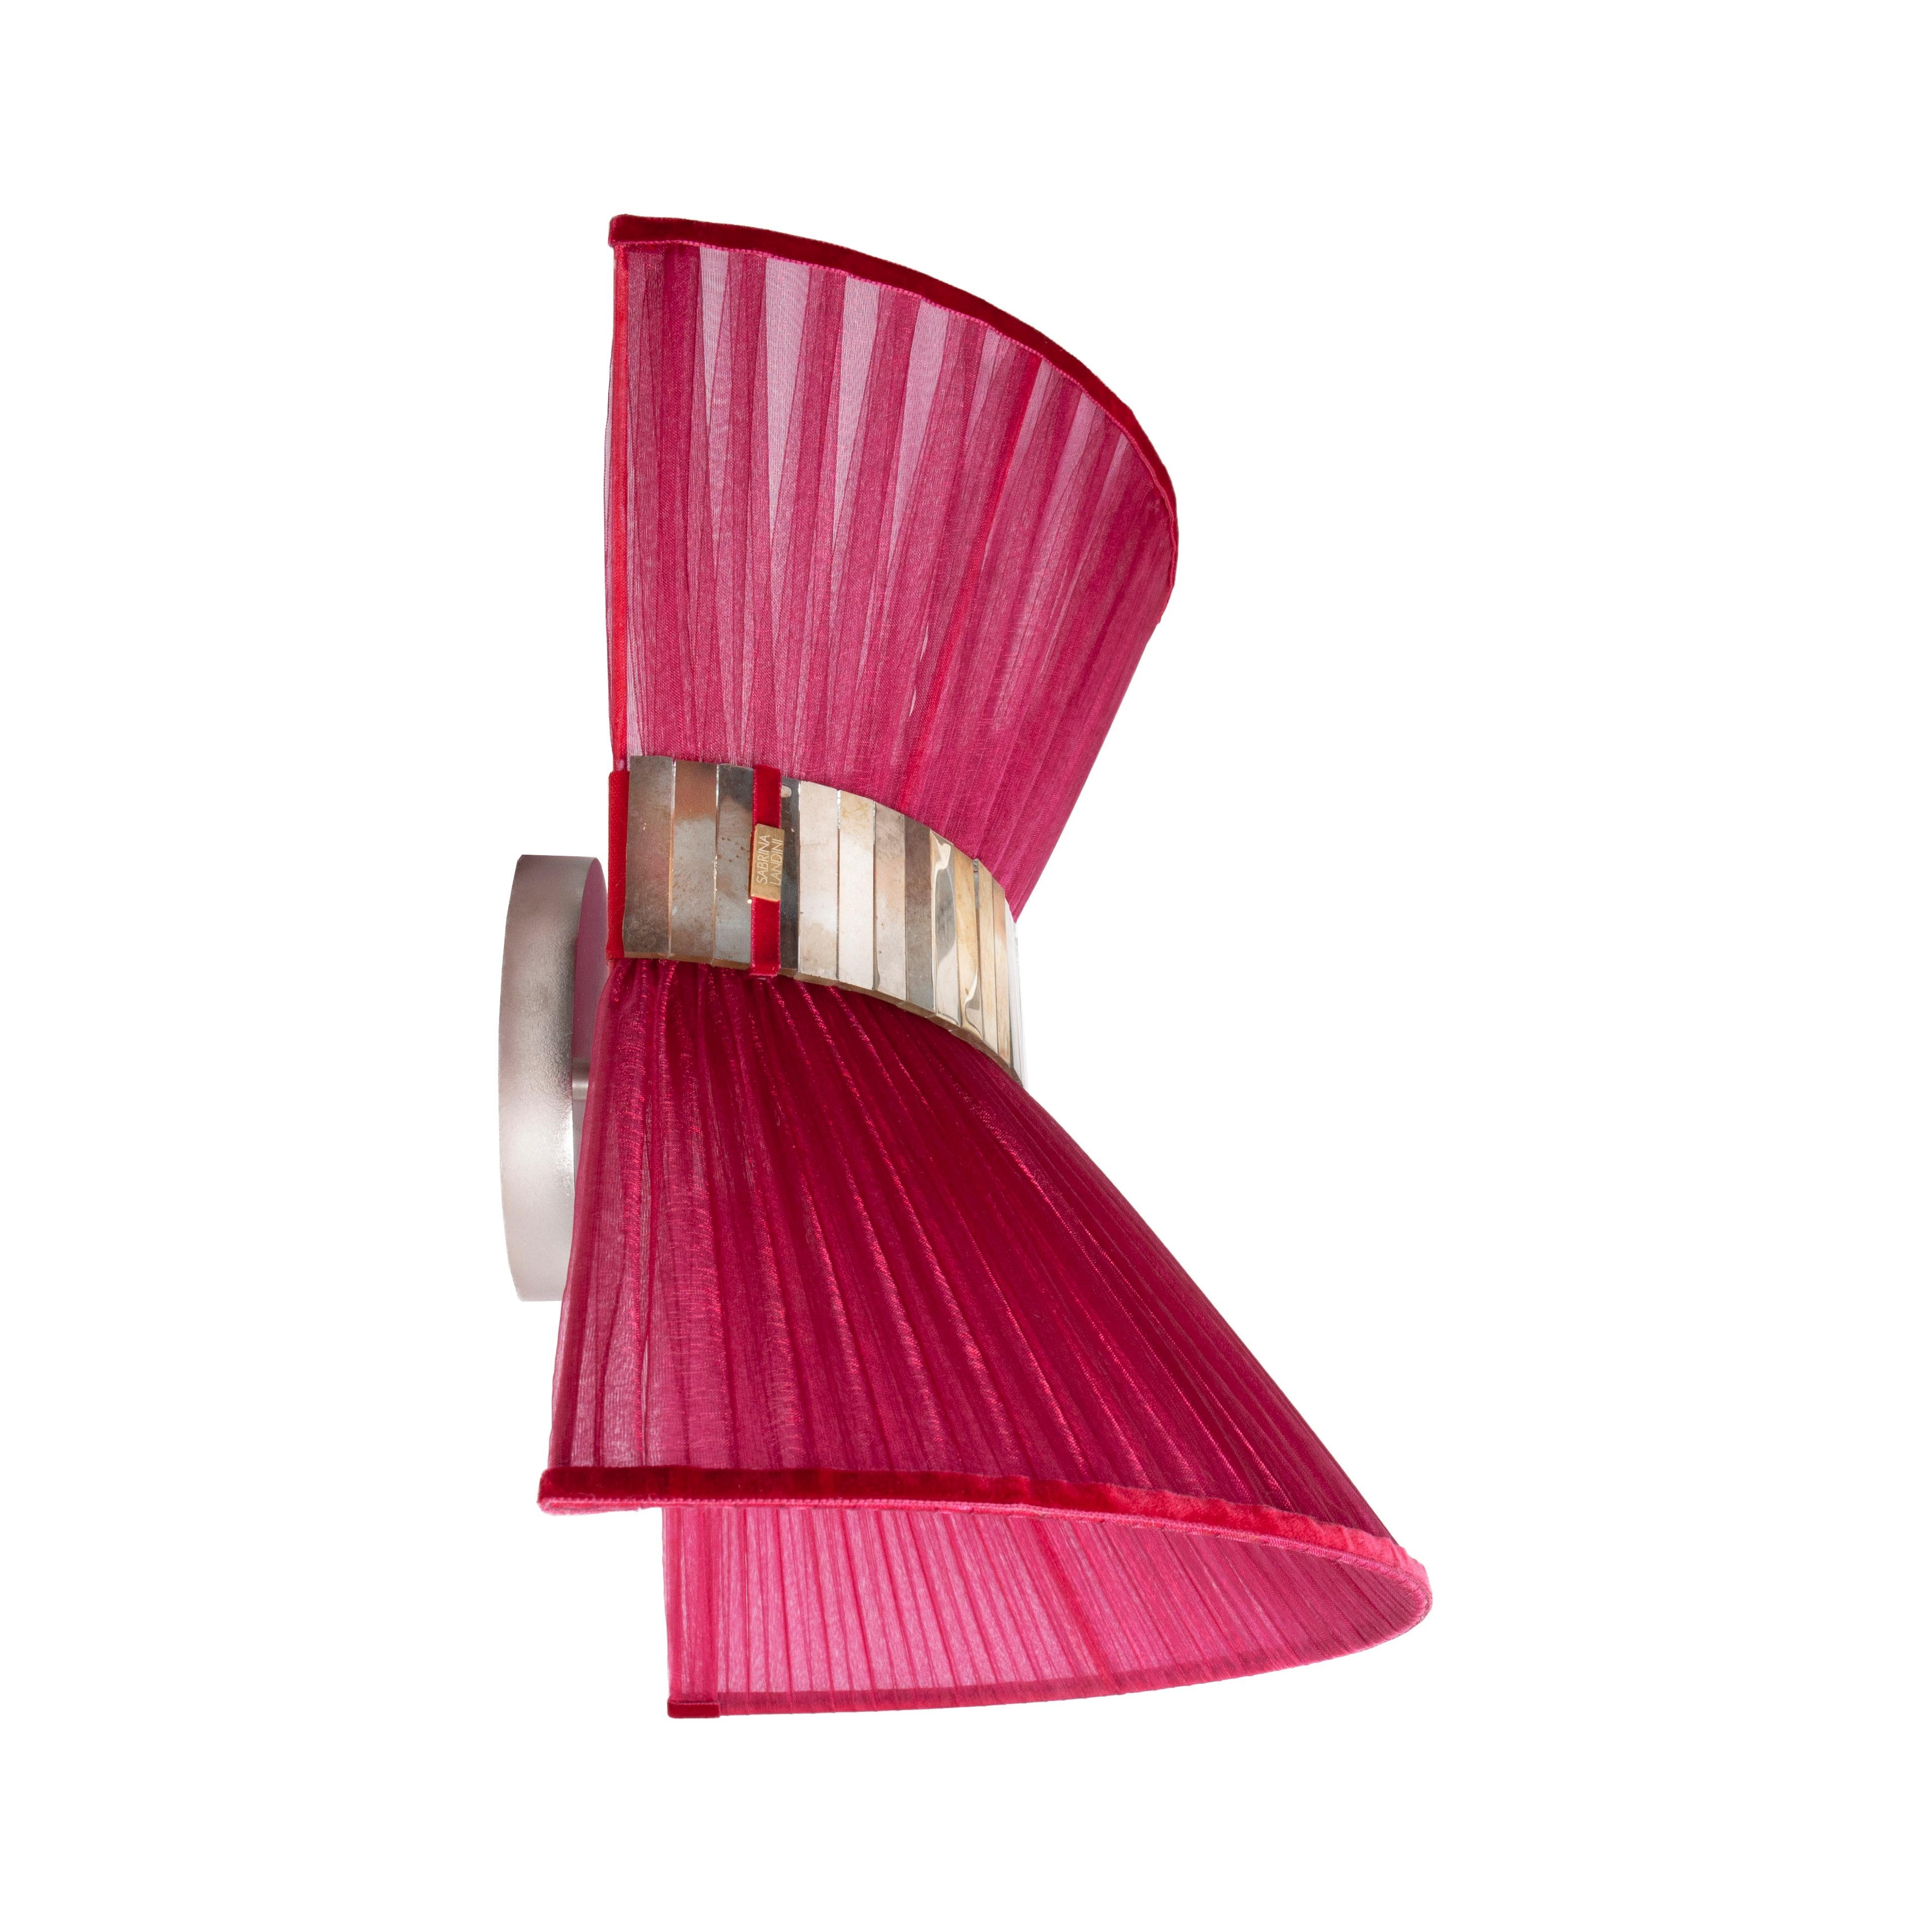 TIFFANY die kultige Lampe!

Tiffany, eine zeitlose Lampe, inspiriert durch den internationalen Film 